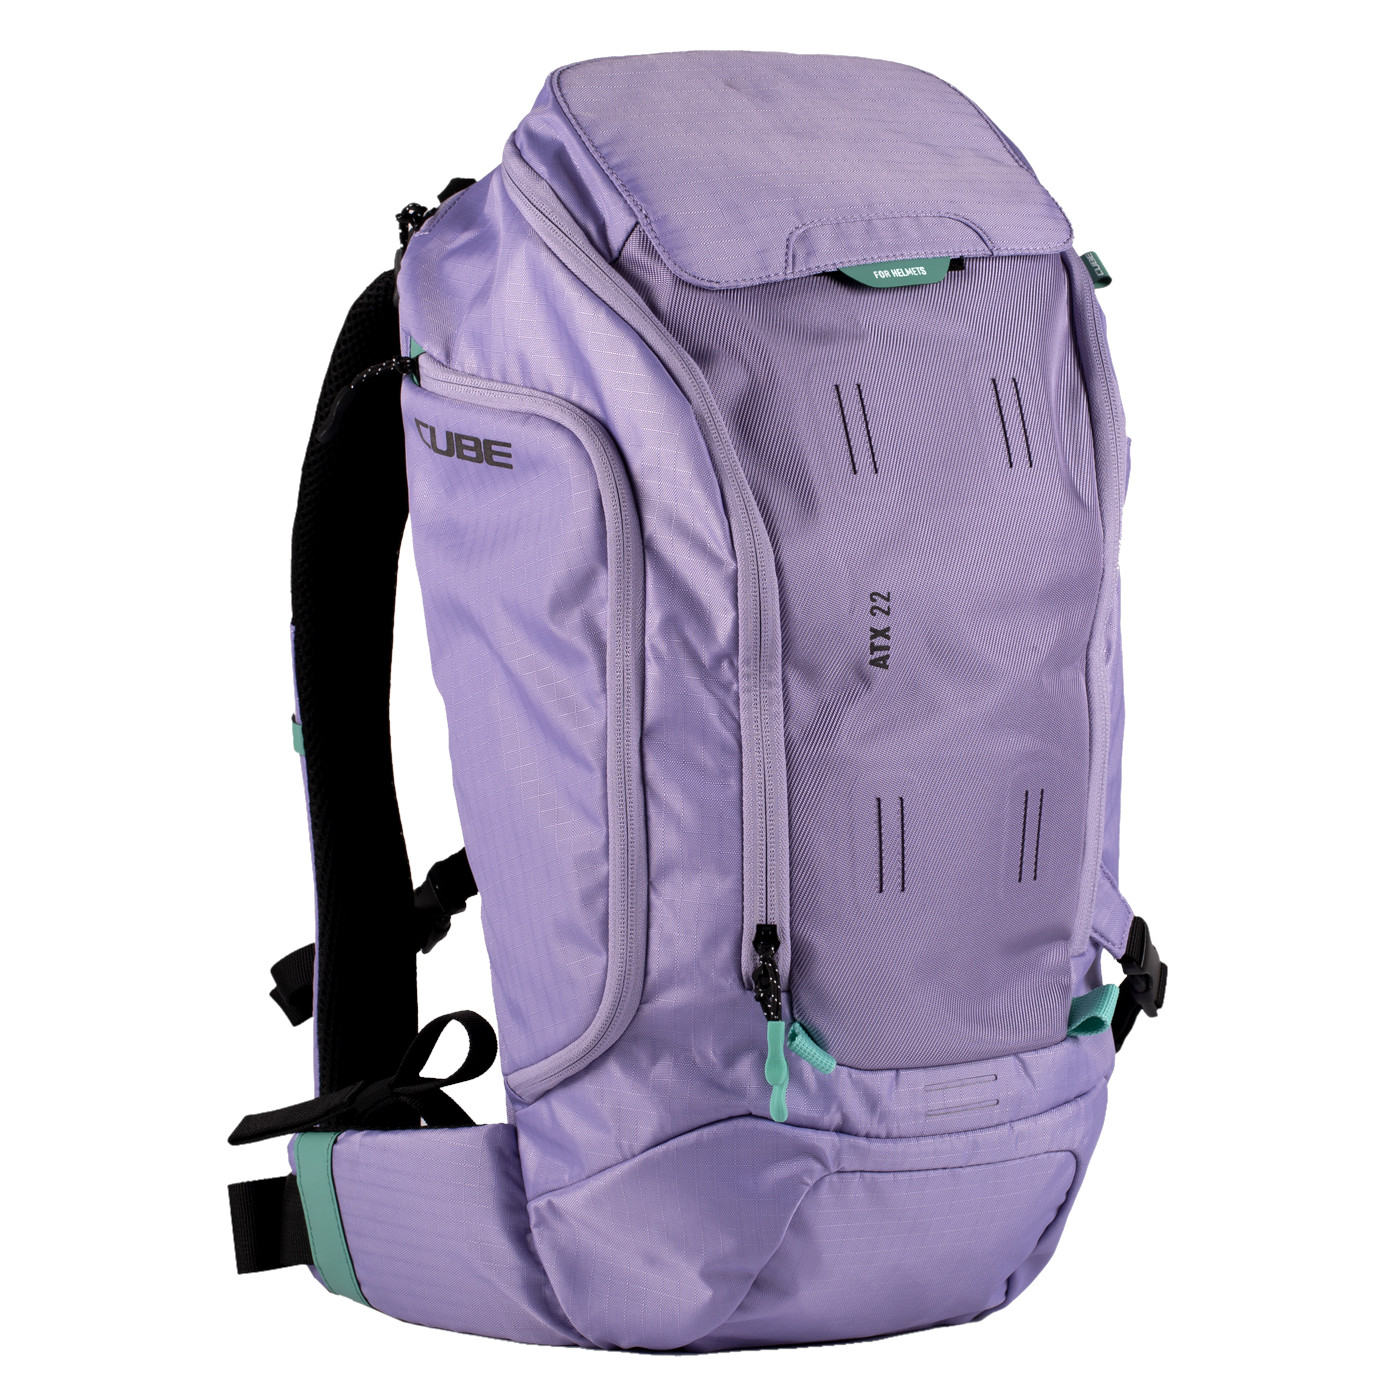 Produktbild von CUBE ATX 22 Rucksack - violett